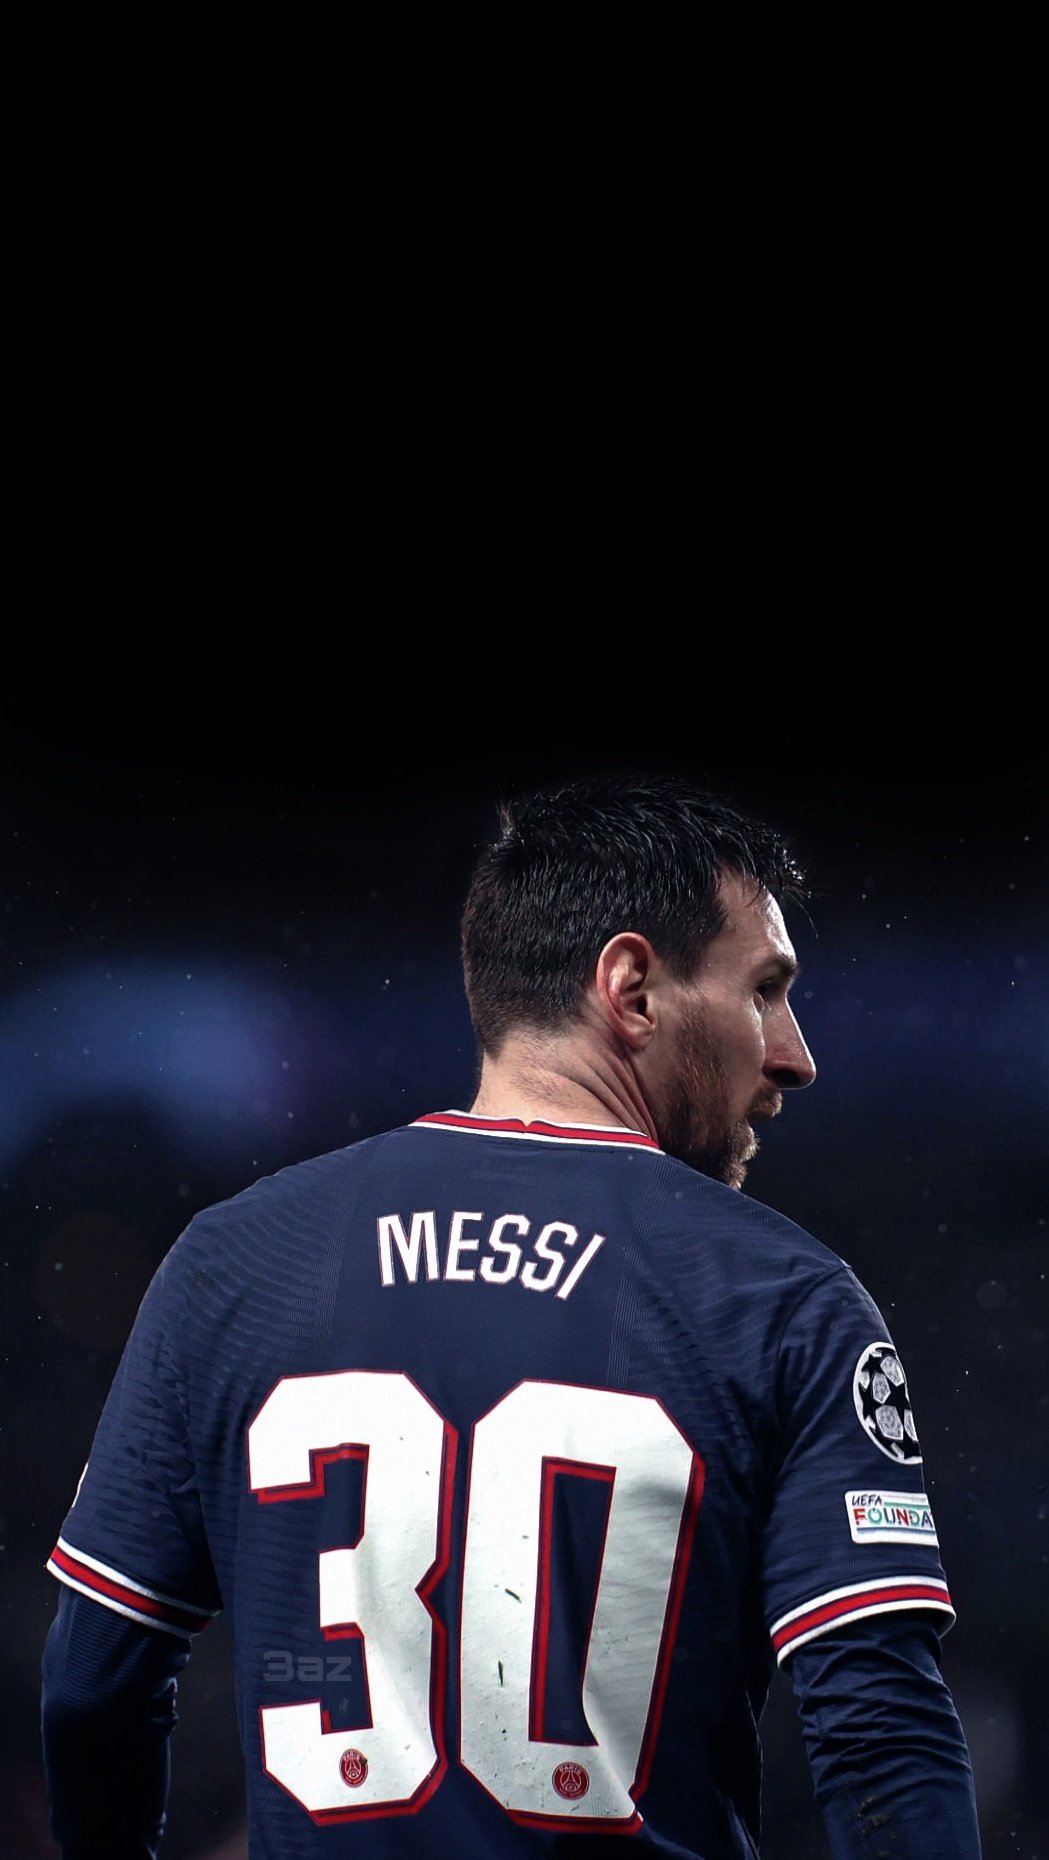 Đừng bỏ lỡ Messi PSG wallpaper này để chào đón siêu sao bóng đá trên sân Parc des Princes. Hãy cập nhật ngay để ngắm nhìn cầu thủ vĩ đại này đội màu xanh Đức và tận hưởng những trận đấu đầy kịch tính của PSG.